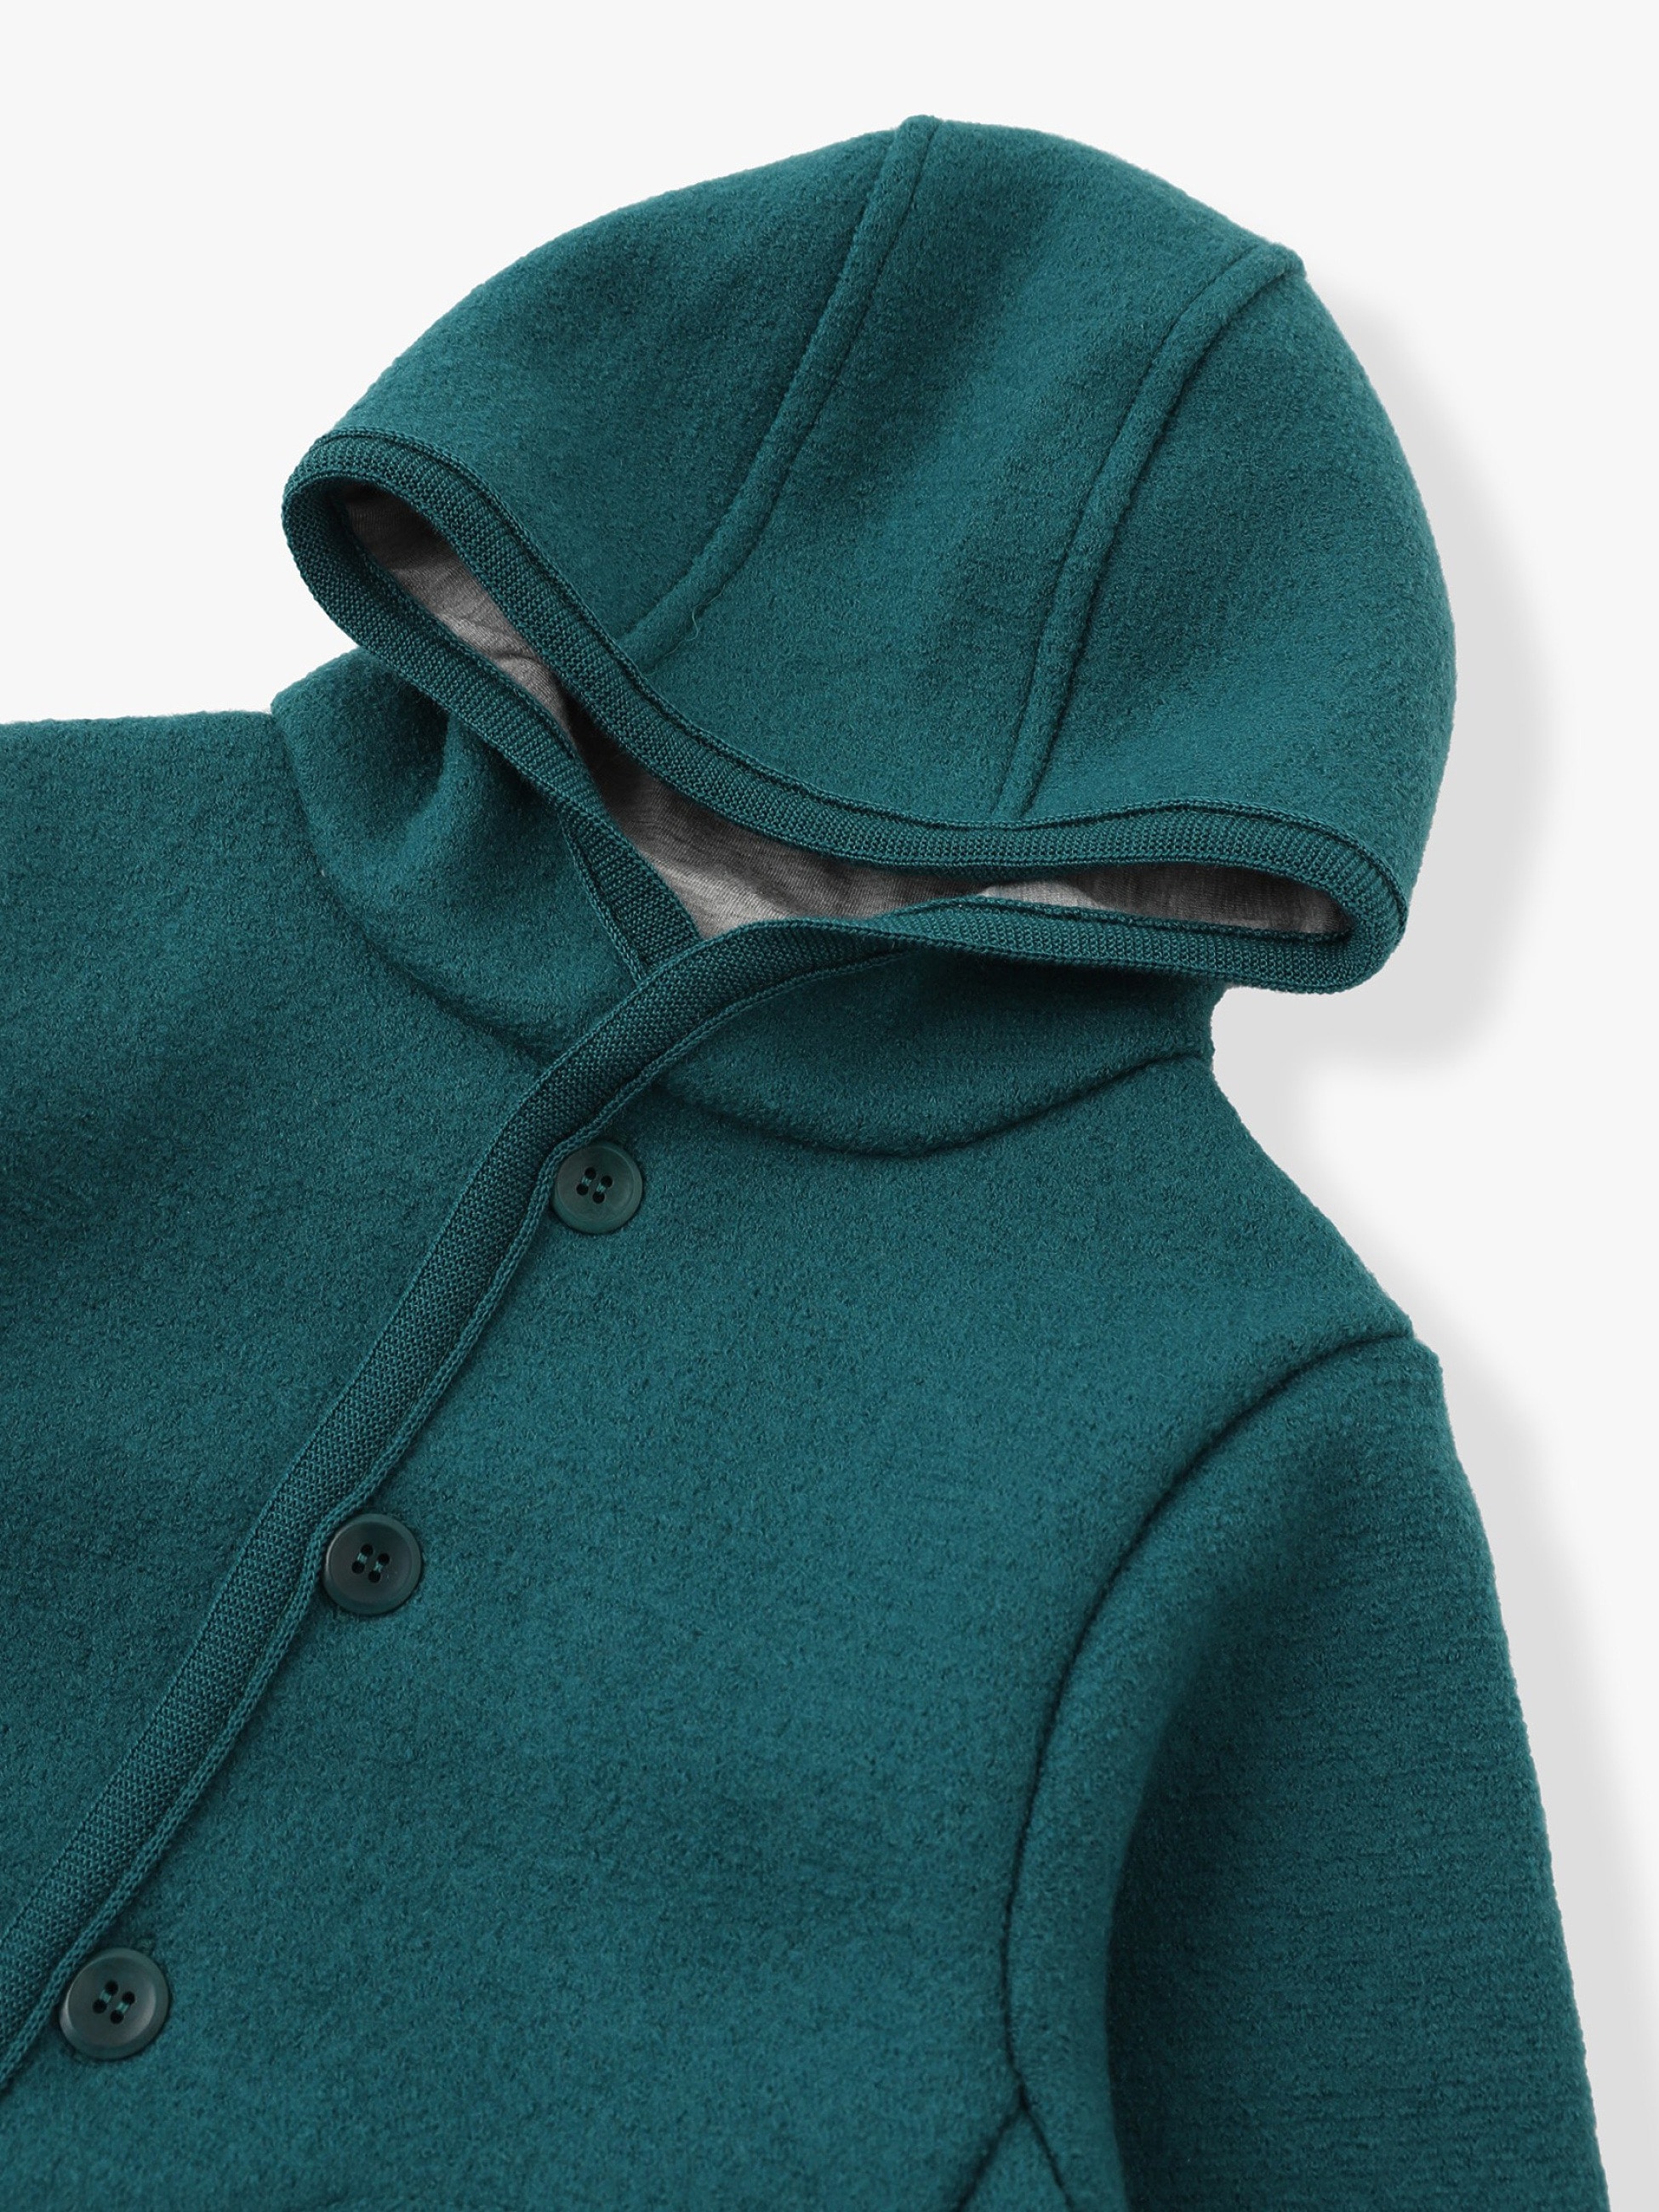 merino wool fleece jacket,Exclusive Deals and Offers,OFF 68%